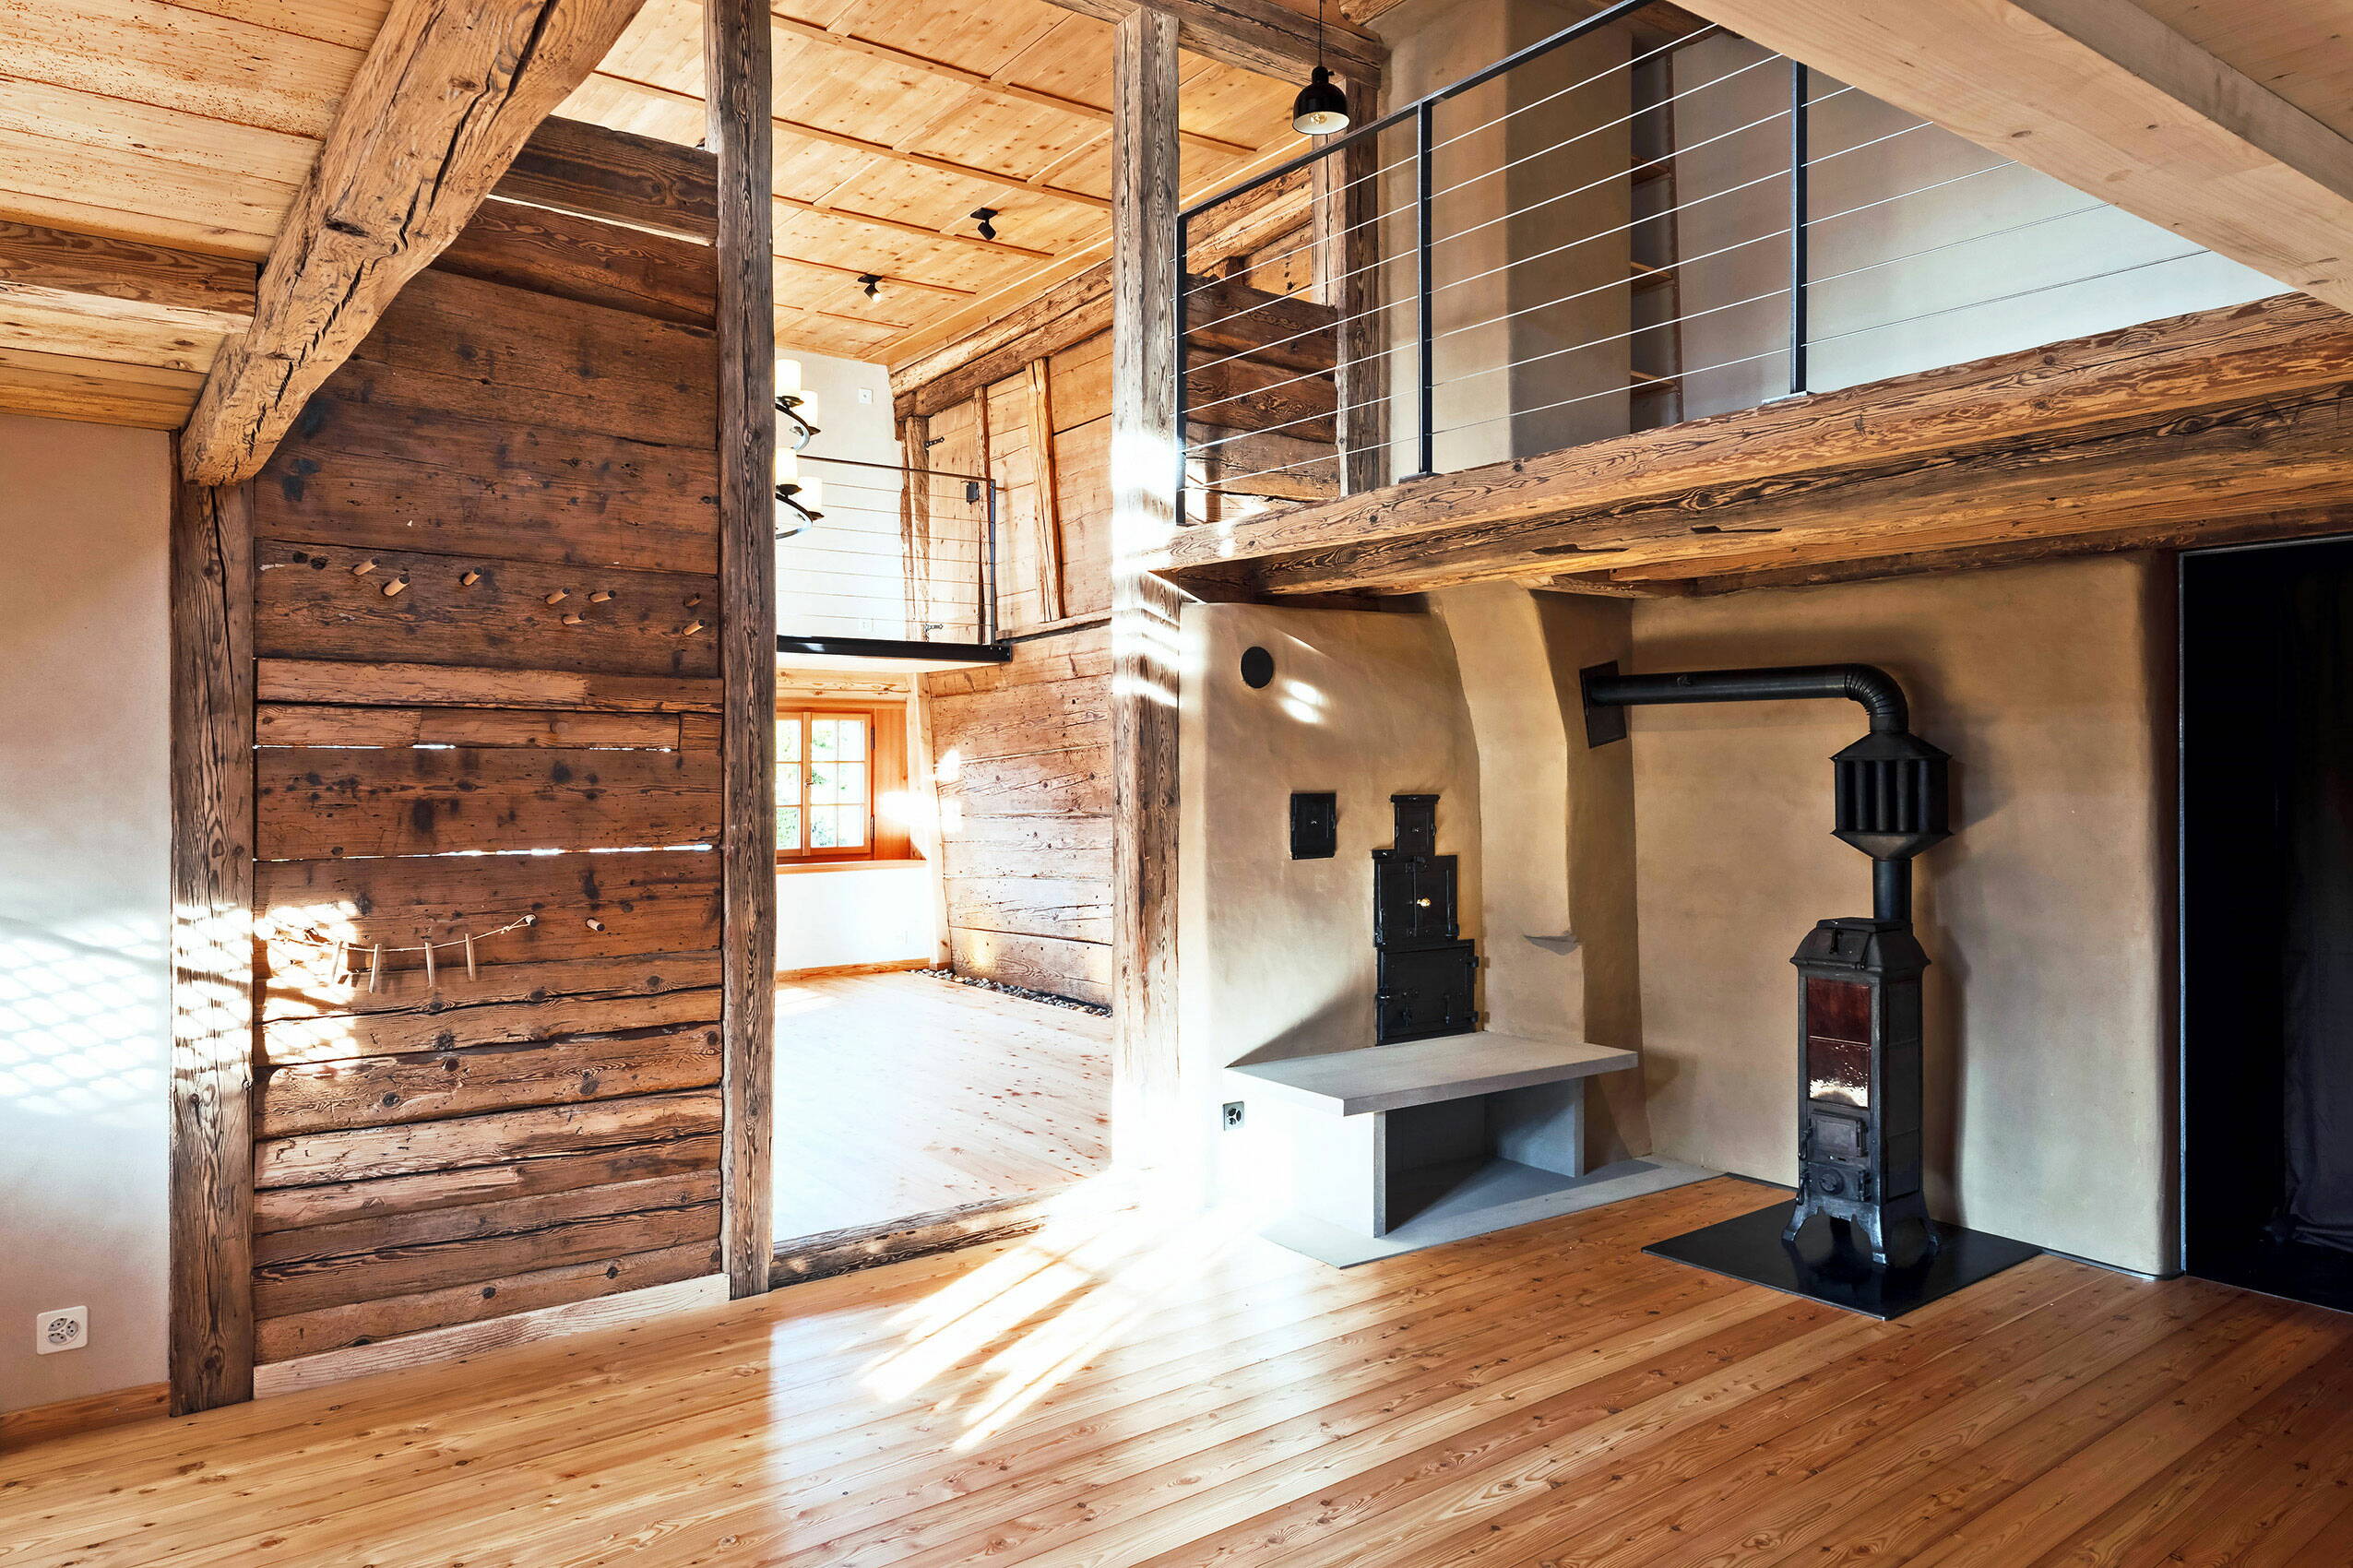 Sicht in ein Wohnbereich eines Altbaus mit Wänden und Böden aus Holz.